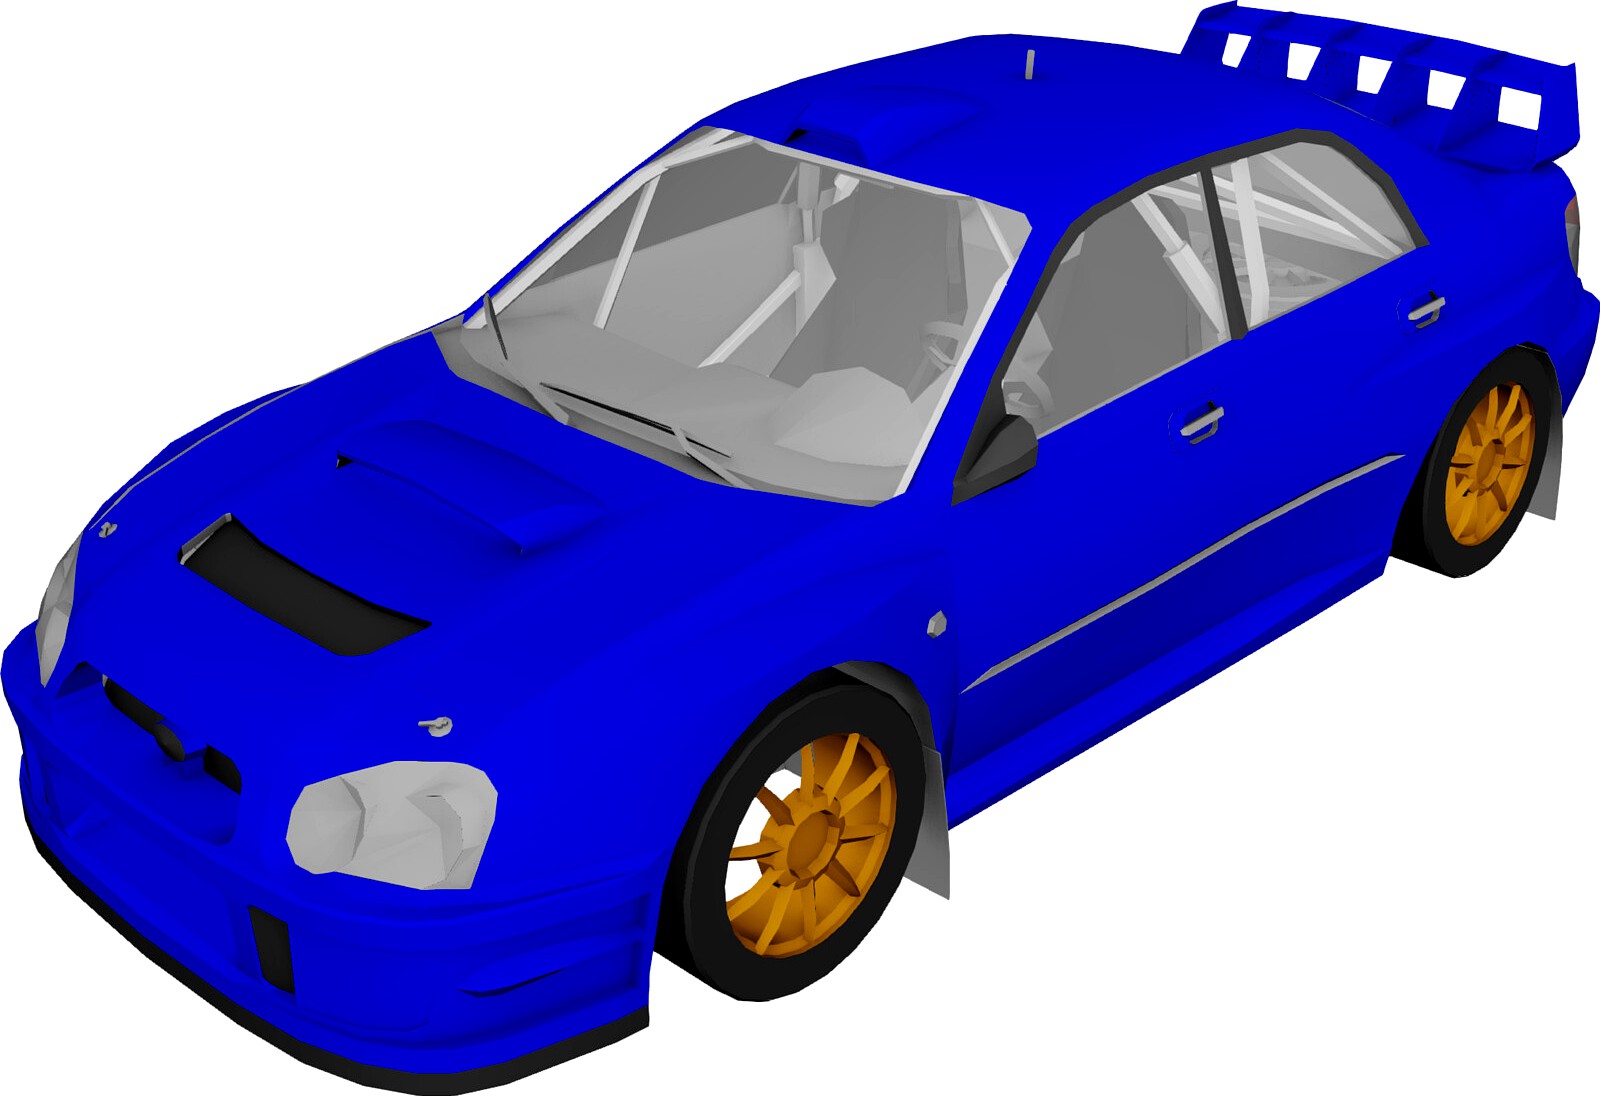 Subaru Impreza WRC (2003)